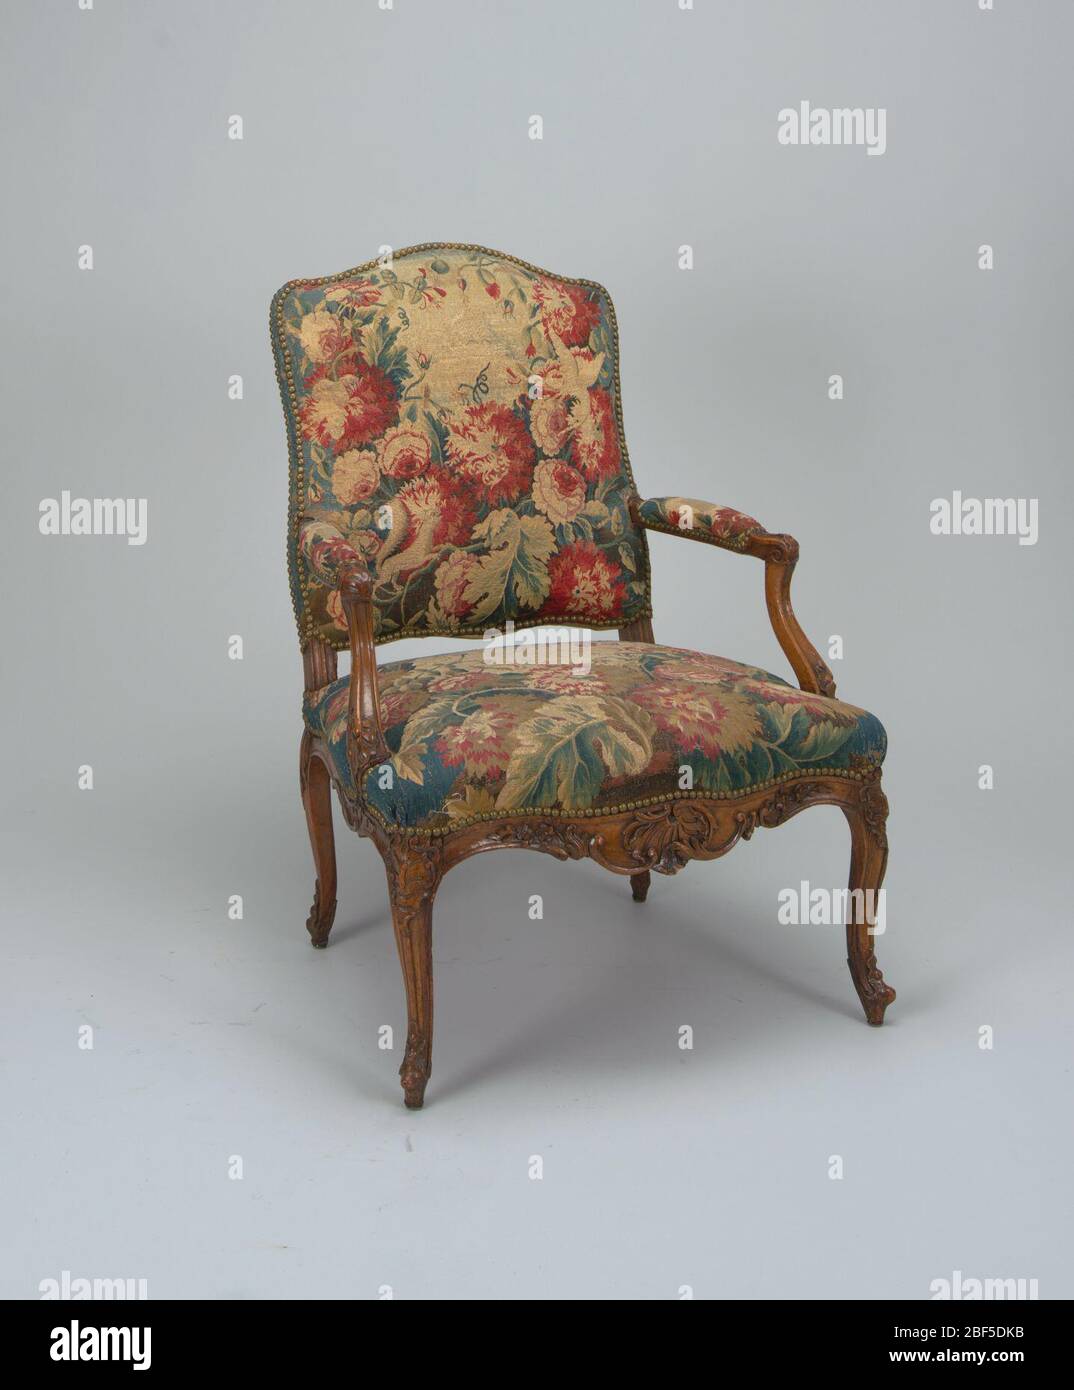 Sillón. Este conjunto de sillas (2) consiste en dos antiguos sillones  cubiertos con tapices Aubusson del período Luis XV. Los sillones tienen  respaldo y asientos curvos tapizados en tejido floral de color